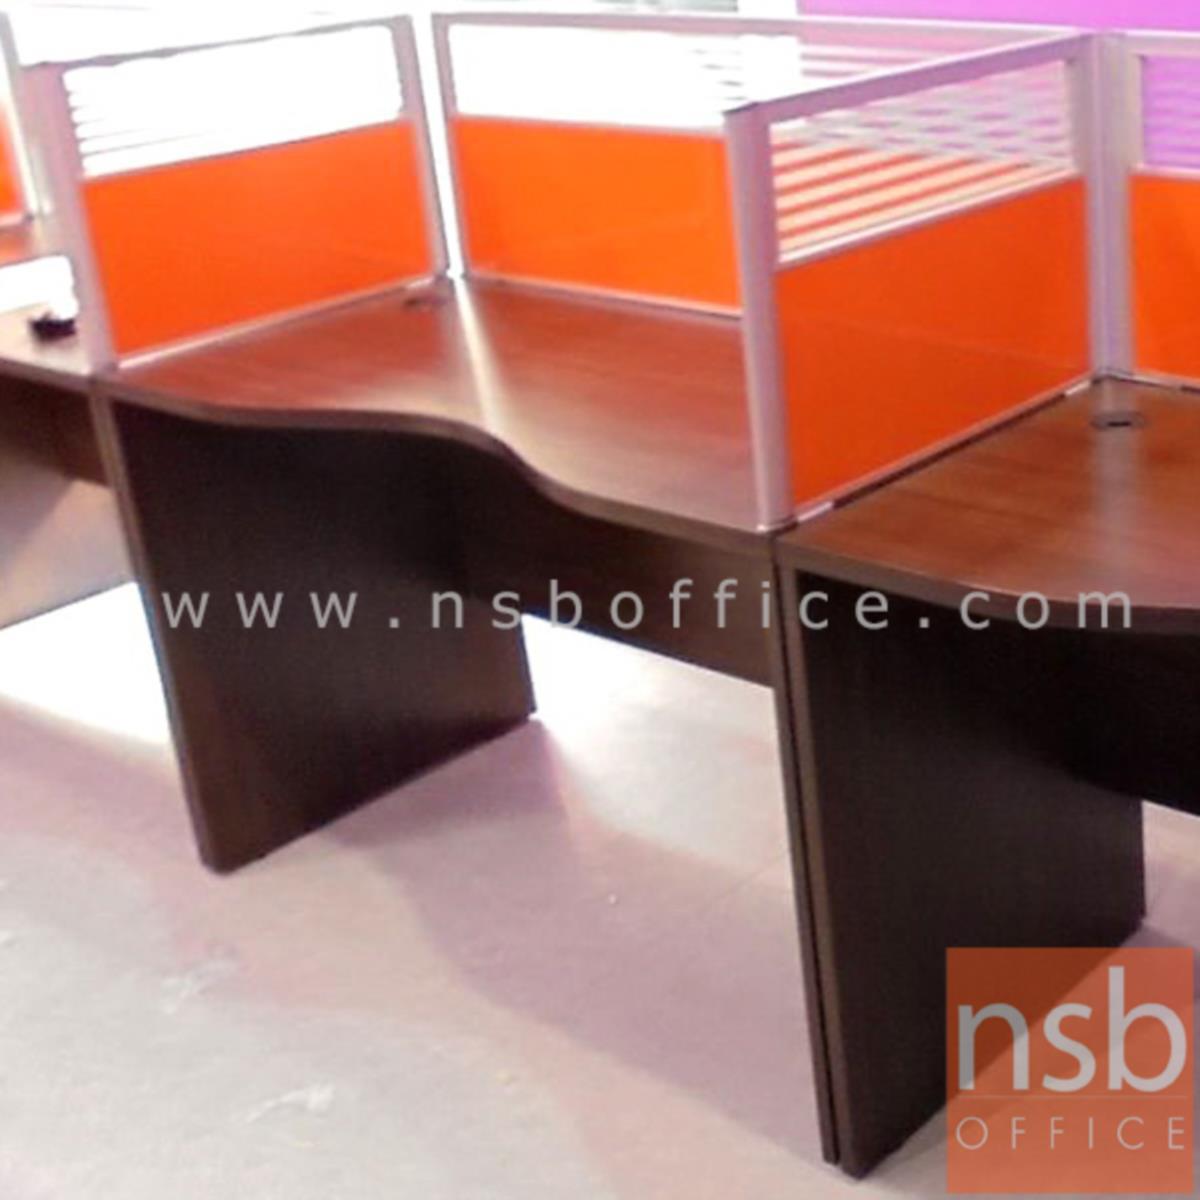 โต๊ะทำงานโล่งหน้าเว้าโค้งใบไม้   ขนาด 120W,150W,180W*(60D,75D) cm.  ไม่รวมพาร์ทิชั่น